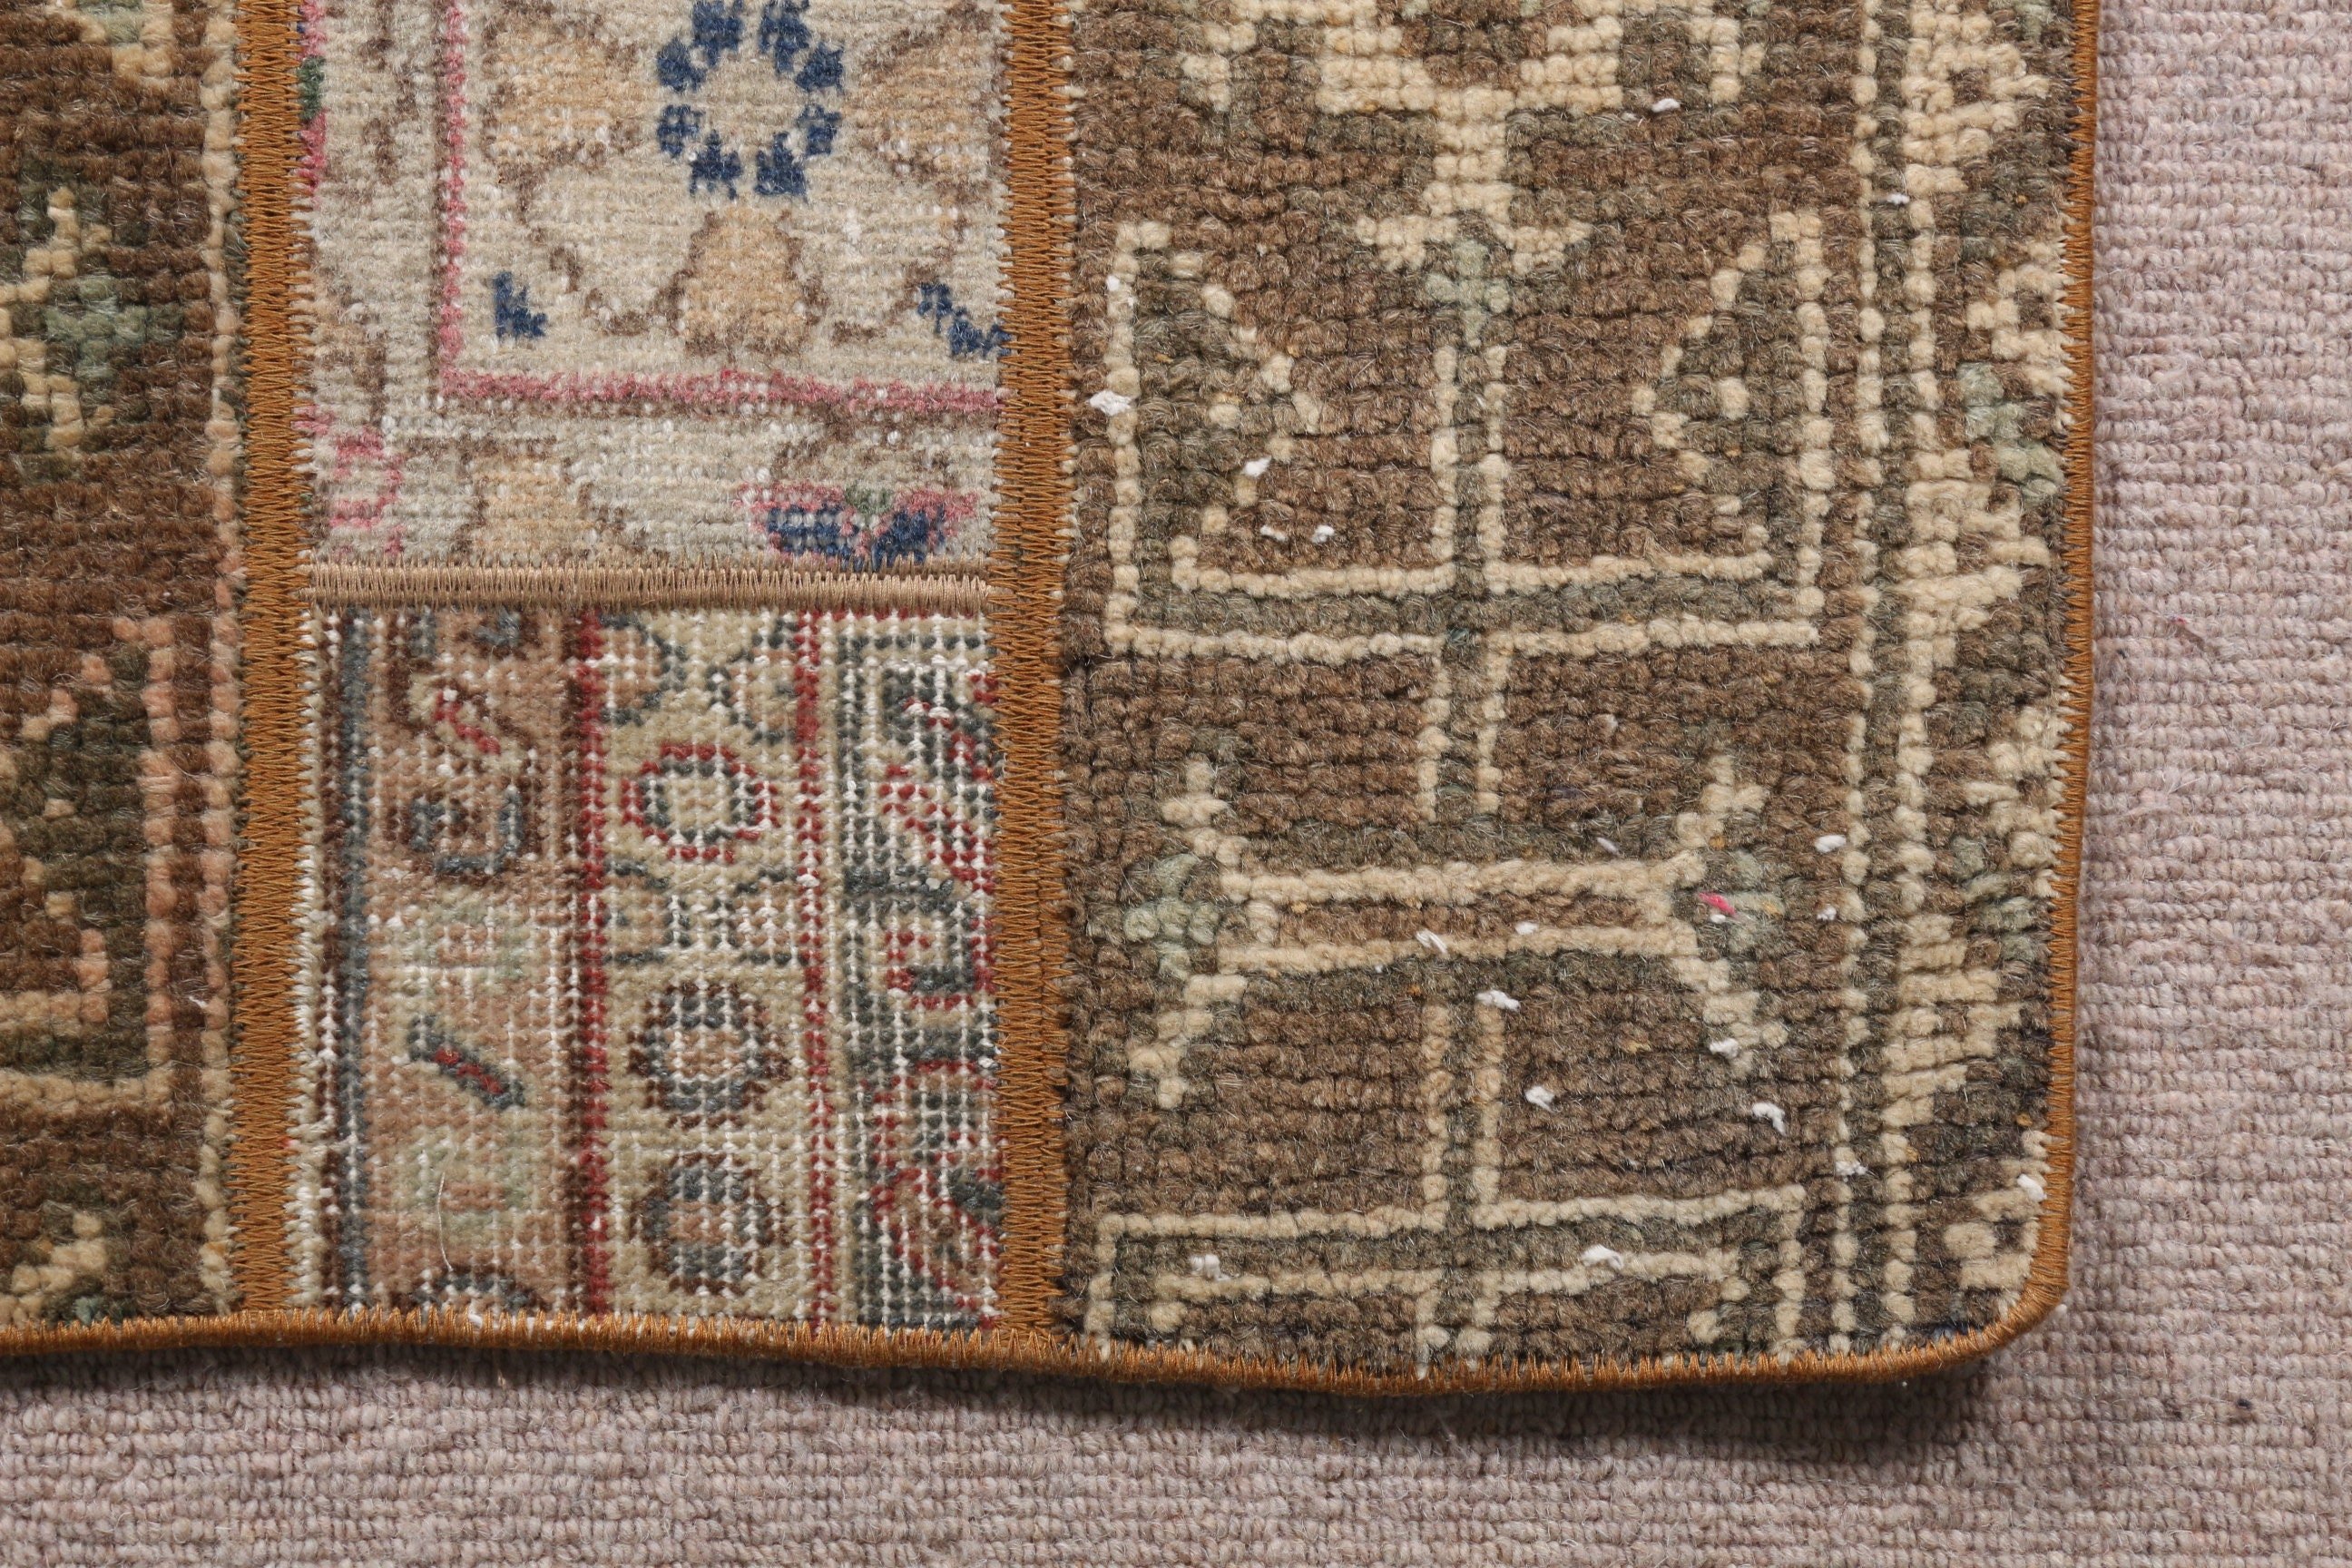 Turkish Rug, Vintage Rugs, Wall Hanging Rug, Art Rug, Car Mat Rug, Brown  1.7x3.2 ft Small Rug, Oriental Rugs